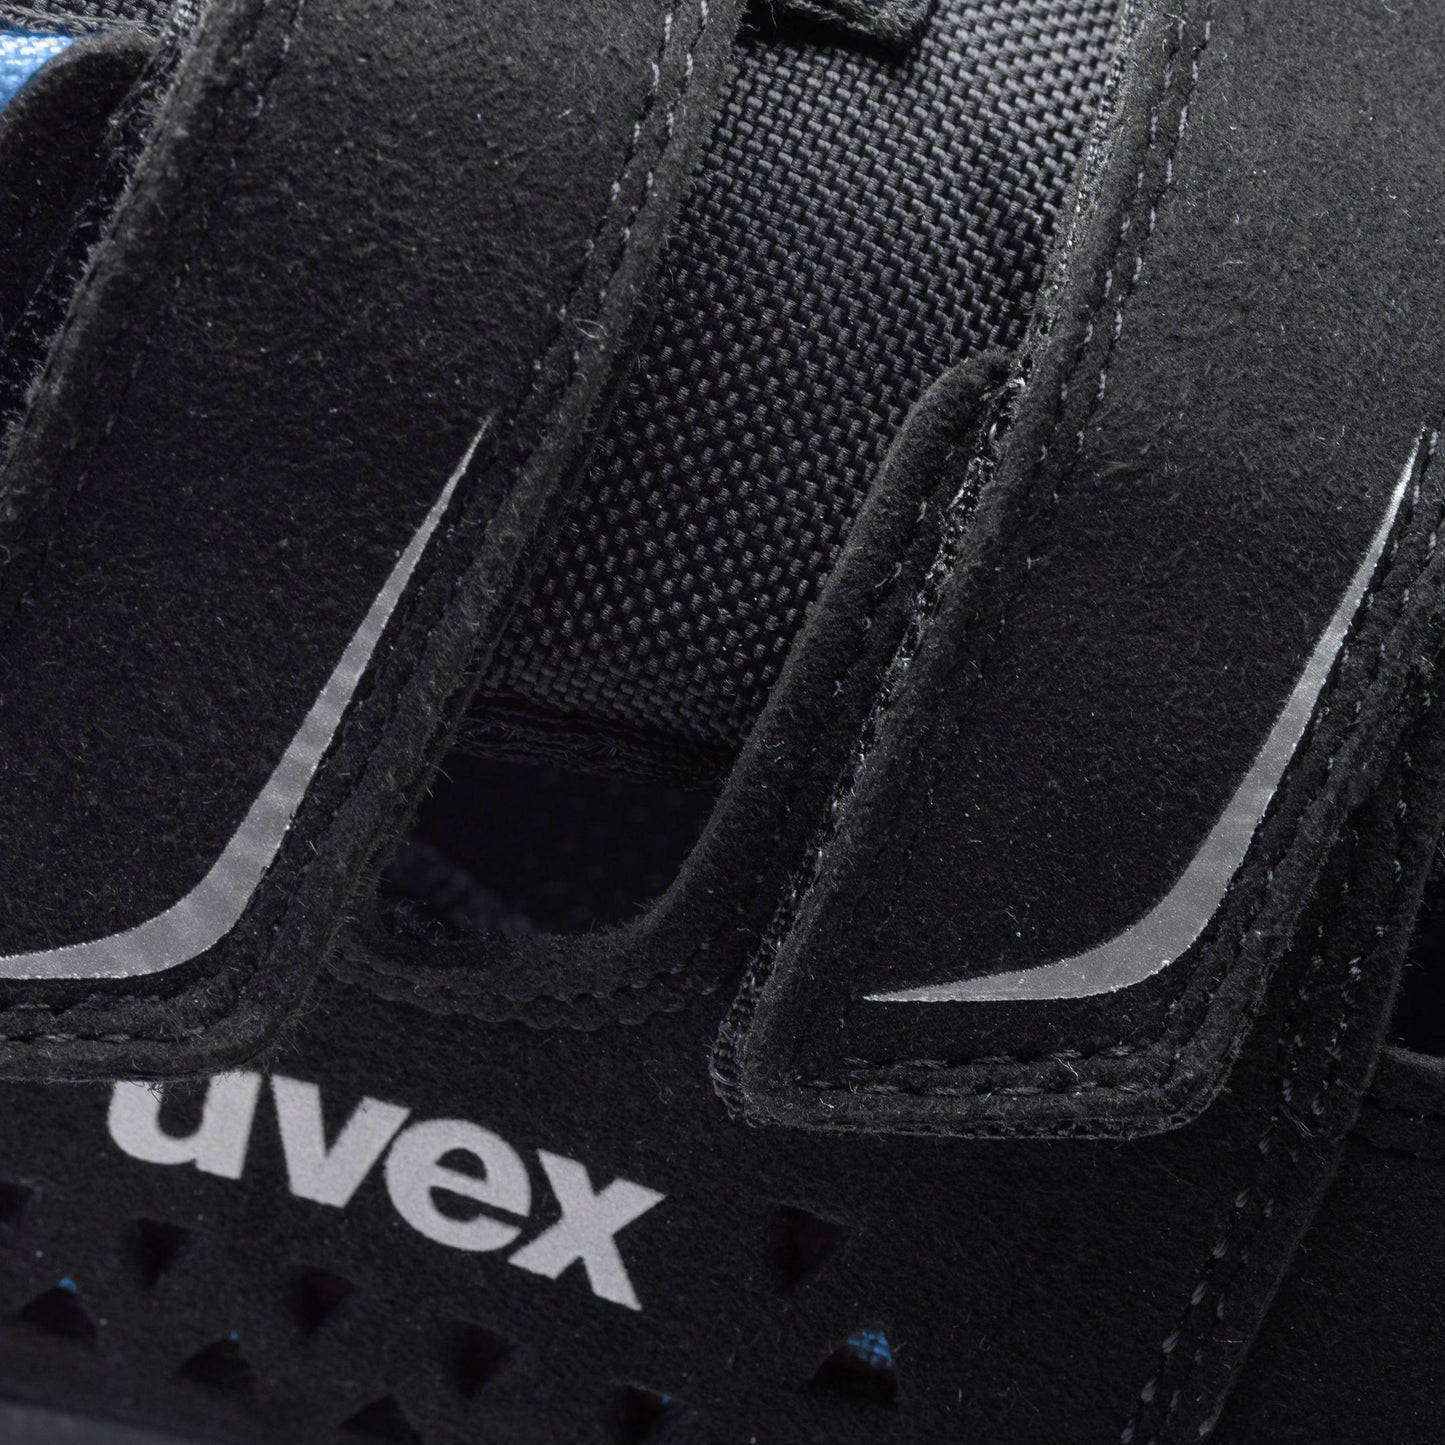 uvex 2 xenova Sicherheitsschuh S1P Sandale- Zehenschutzkappe der neuesten Generation7